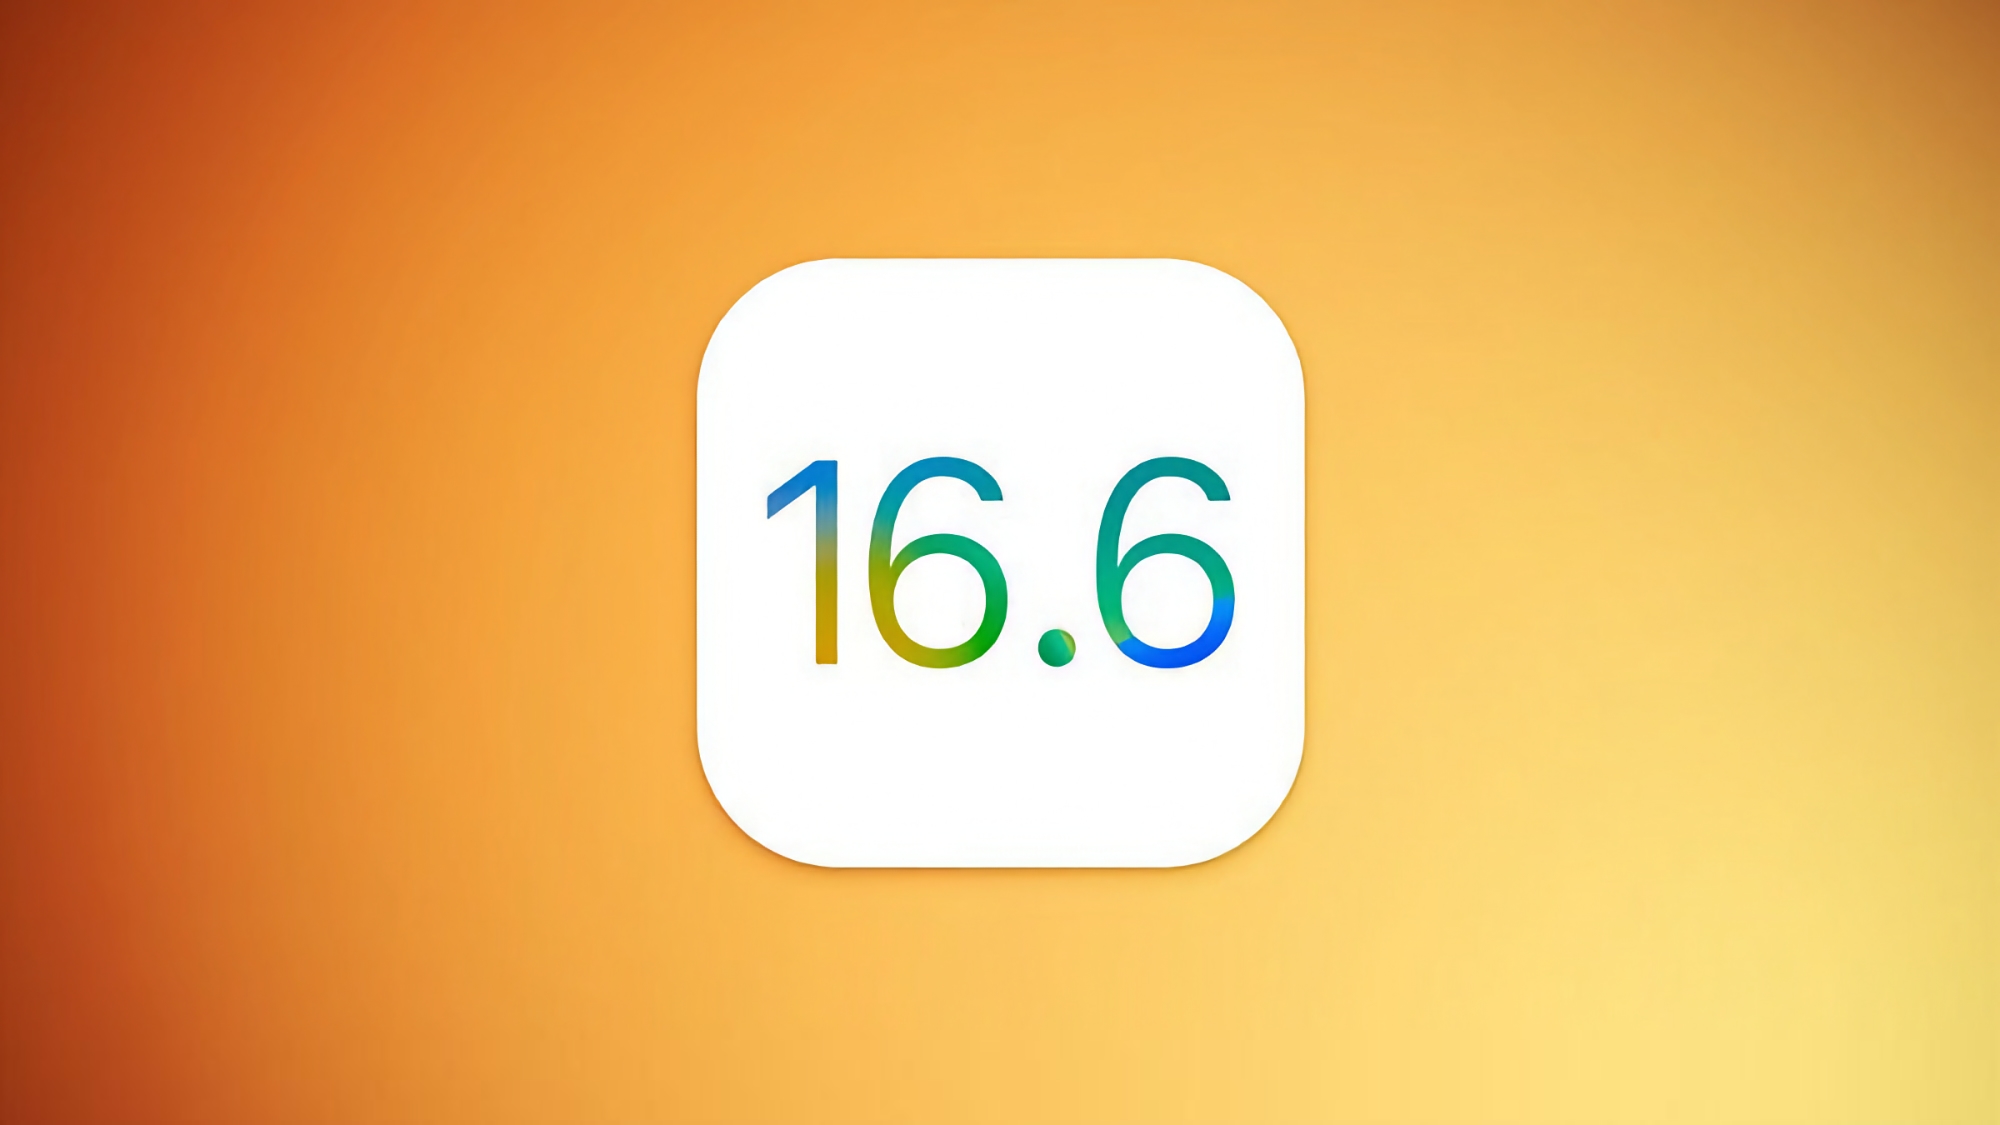 Apple udostępnia piątą wersję beta iOS 16.6: Co nowego i kiedy można spodziewać się oprogramowania?